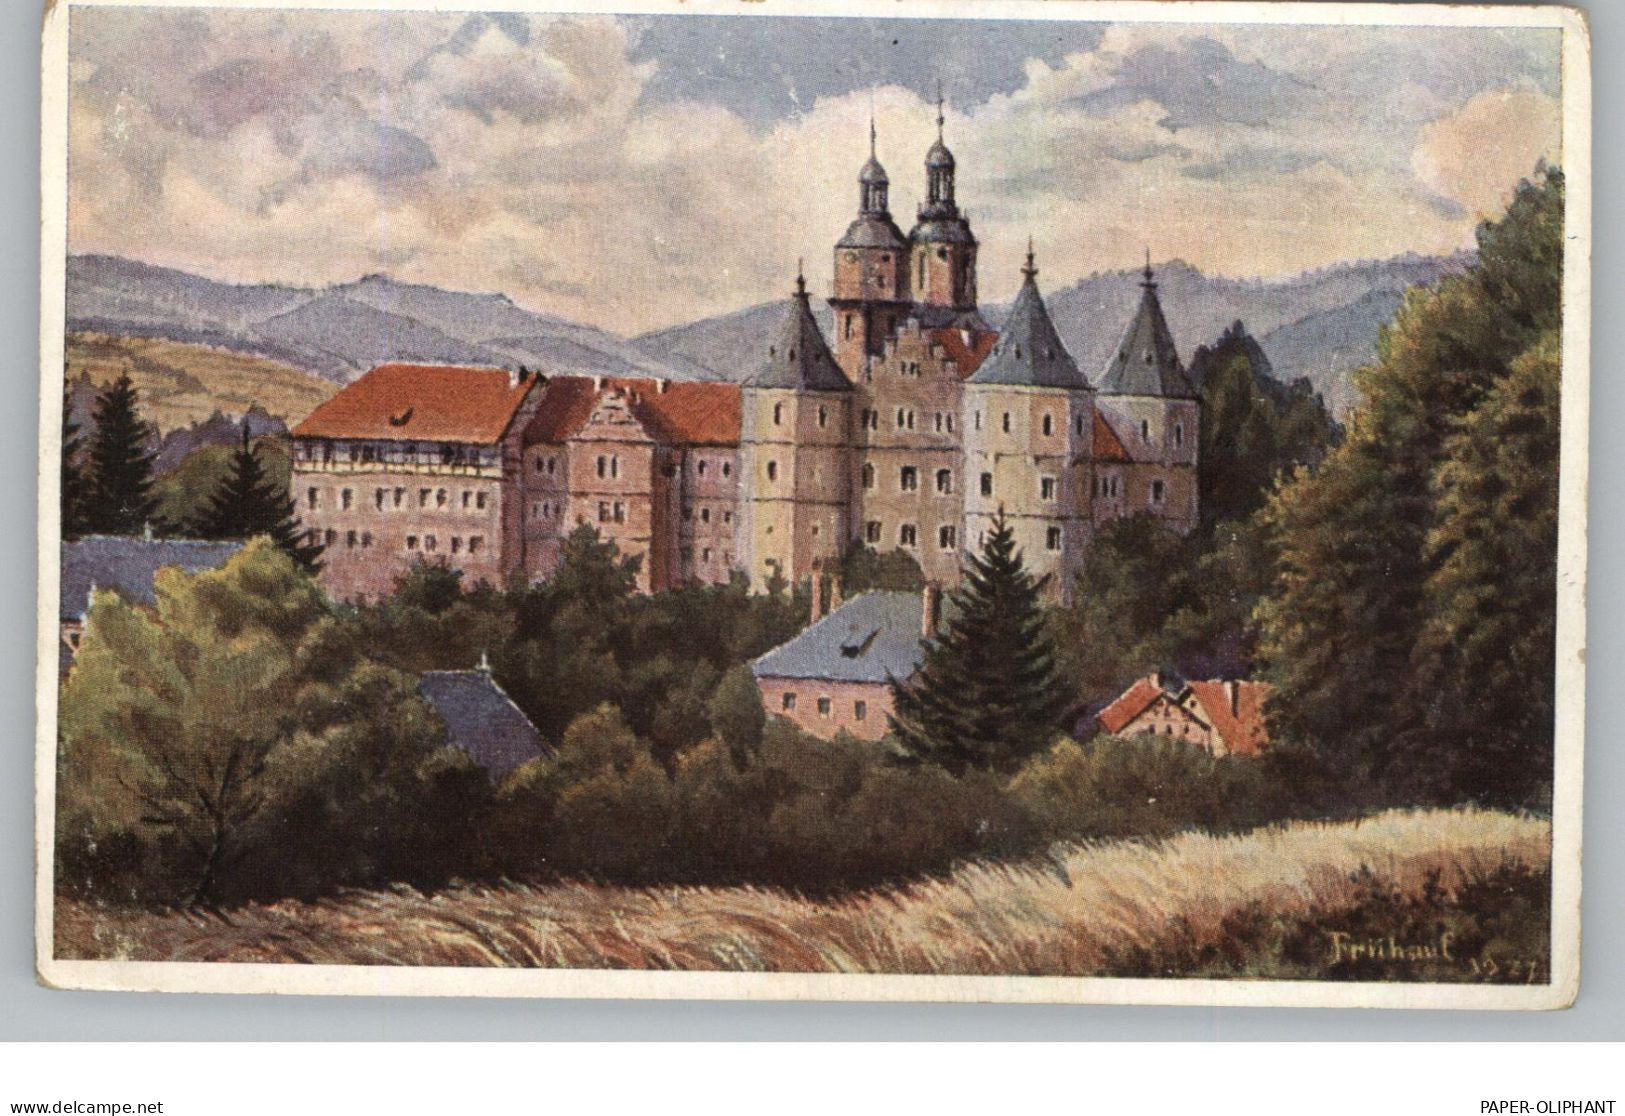 0-6056 SCHLEUSINGEN, Bertholdsburg, Künstler-Karte Frühauf 1927, Kl. Druckstelle - Schleusingen